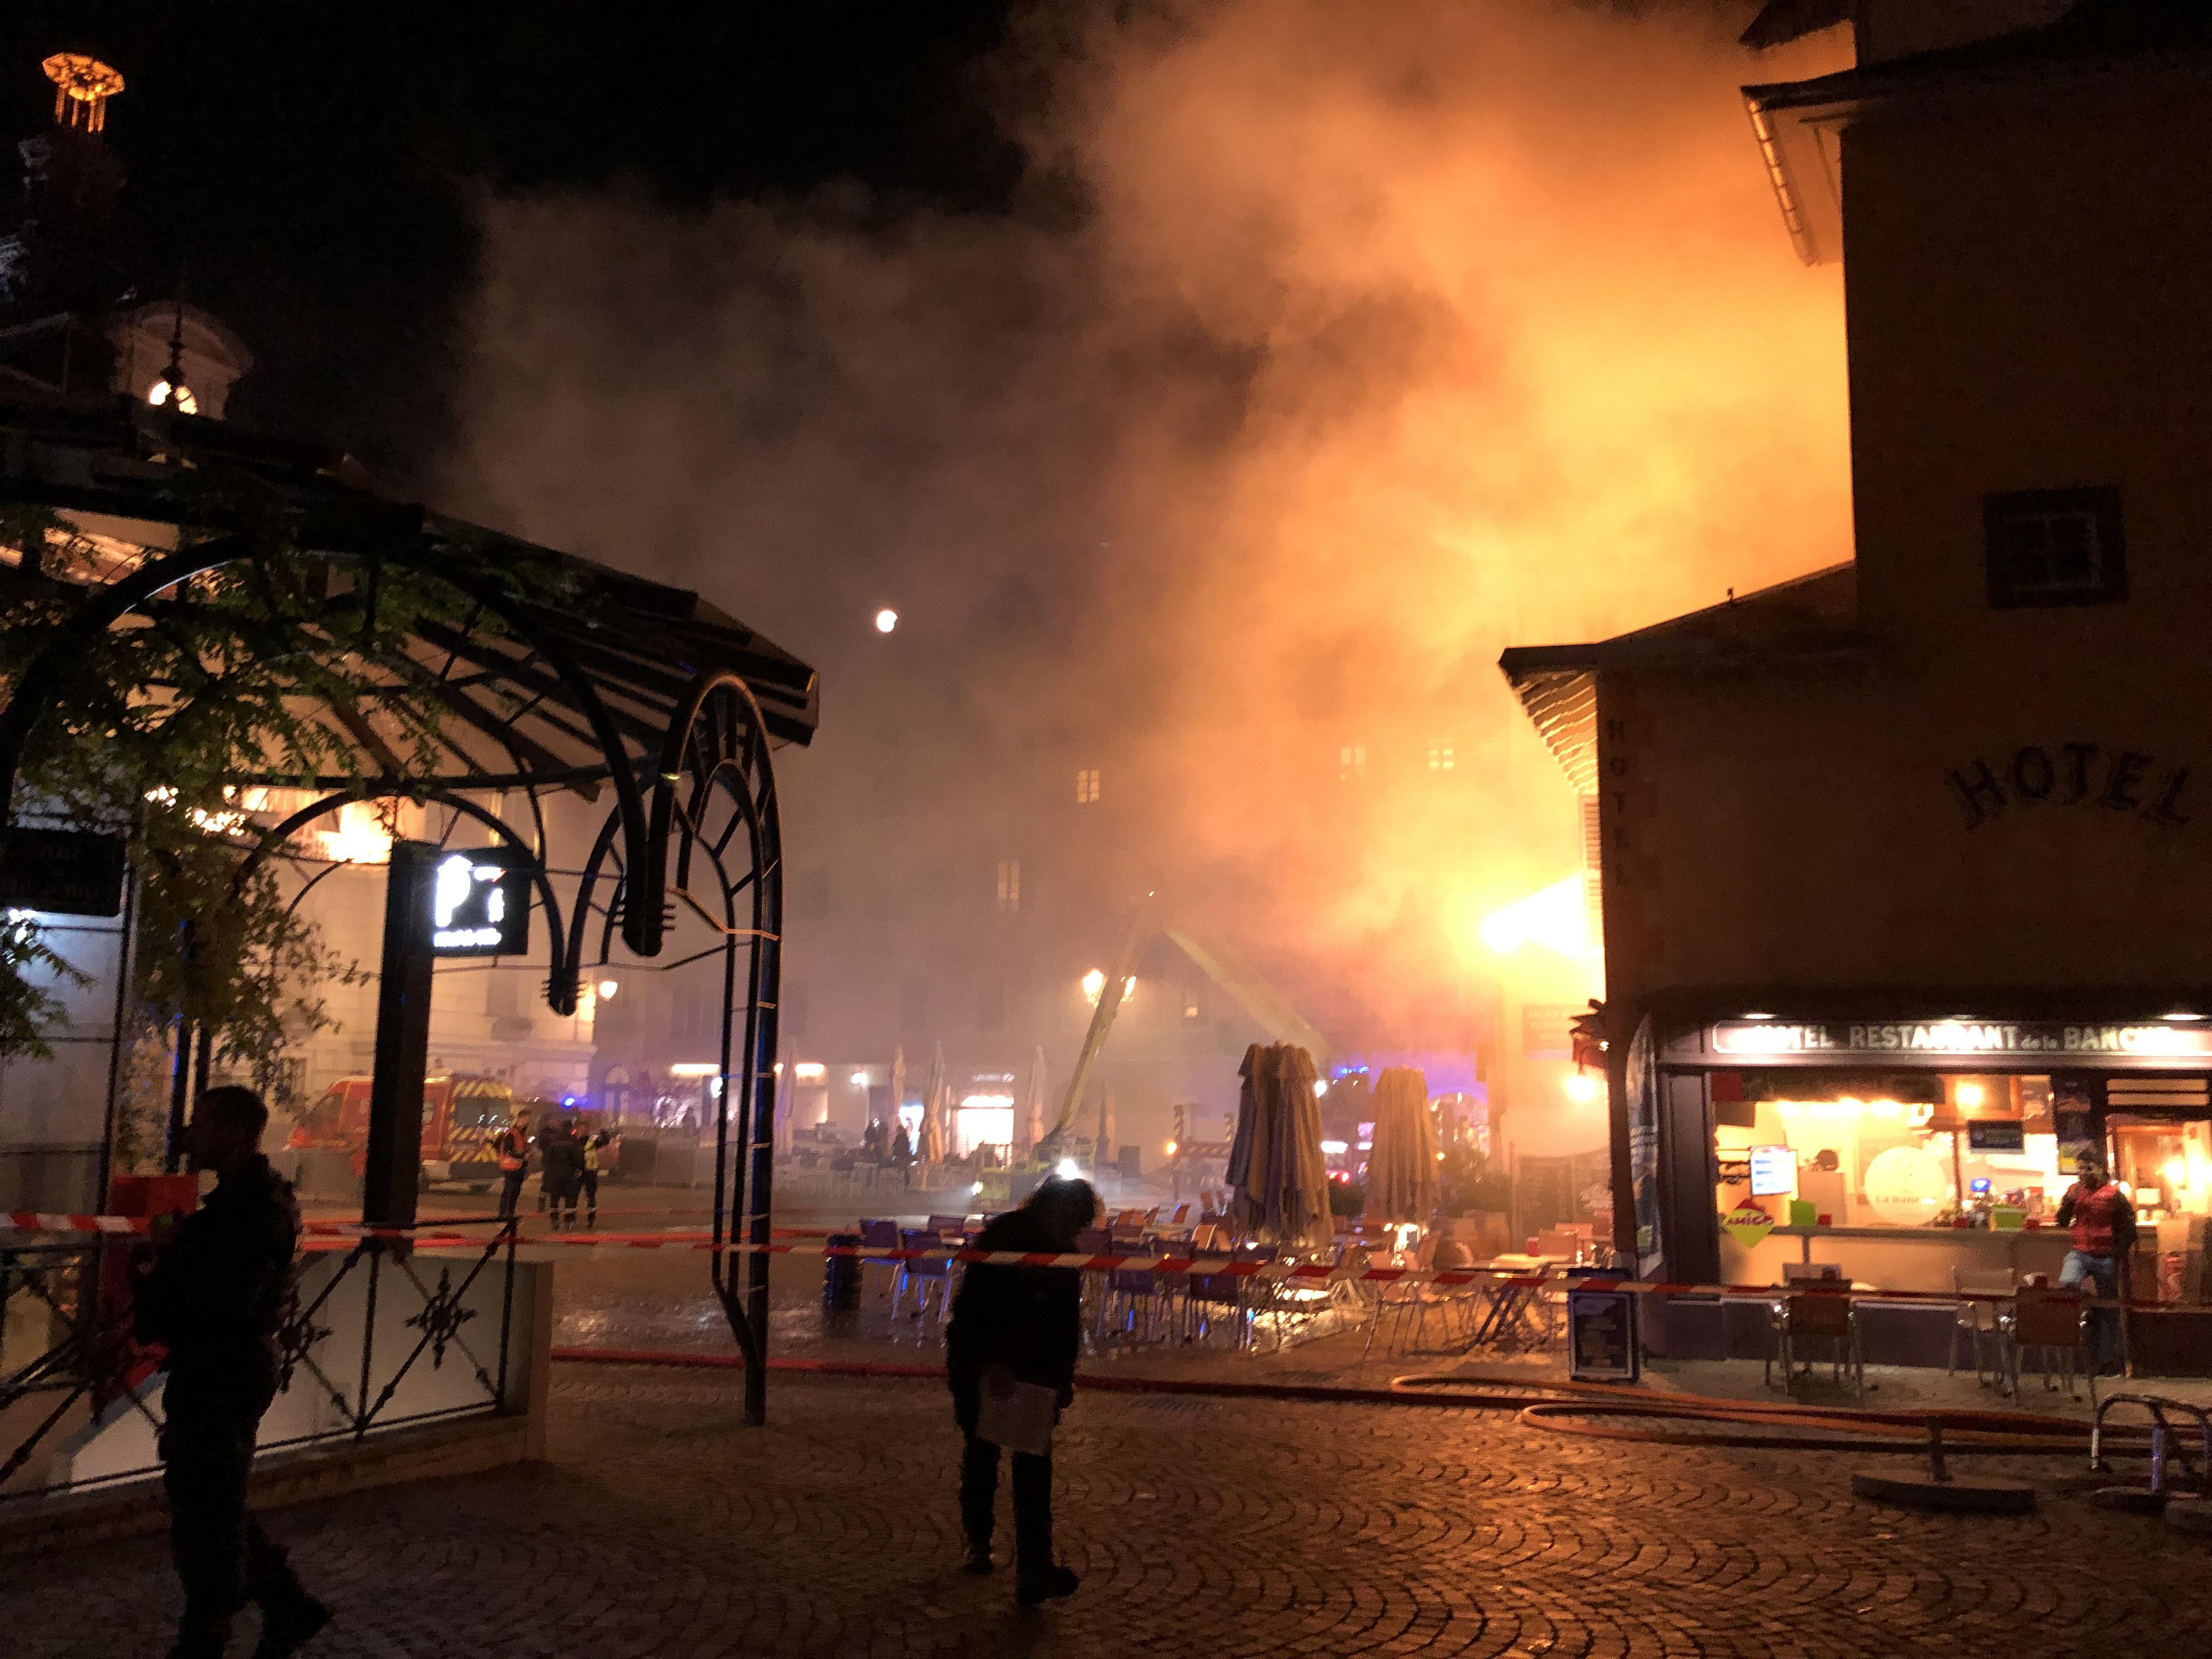 Chambéry : revivez le spectaculaire exercice incendie dans le centre historique